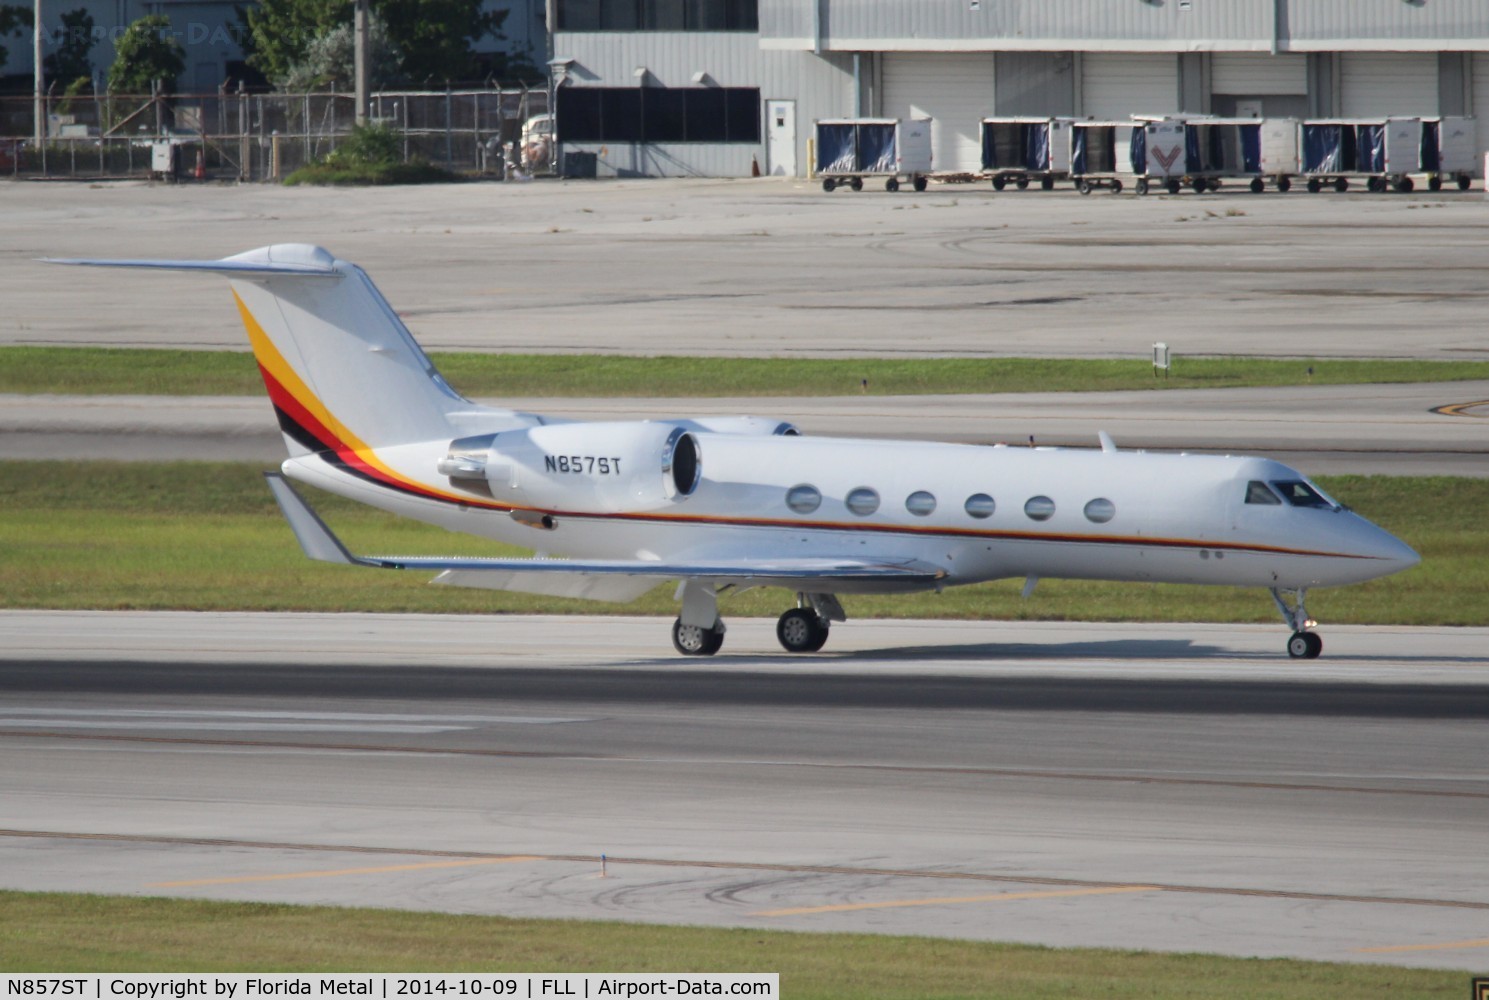 N857ST, 1998 Gulfstream Aerospace G-IV C/N 1345, Seminole Tribe of Florida GIV